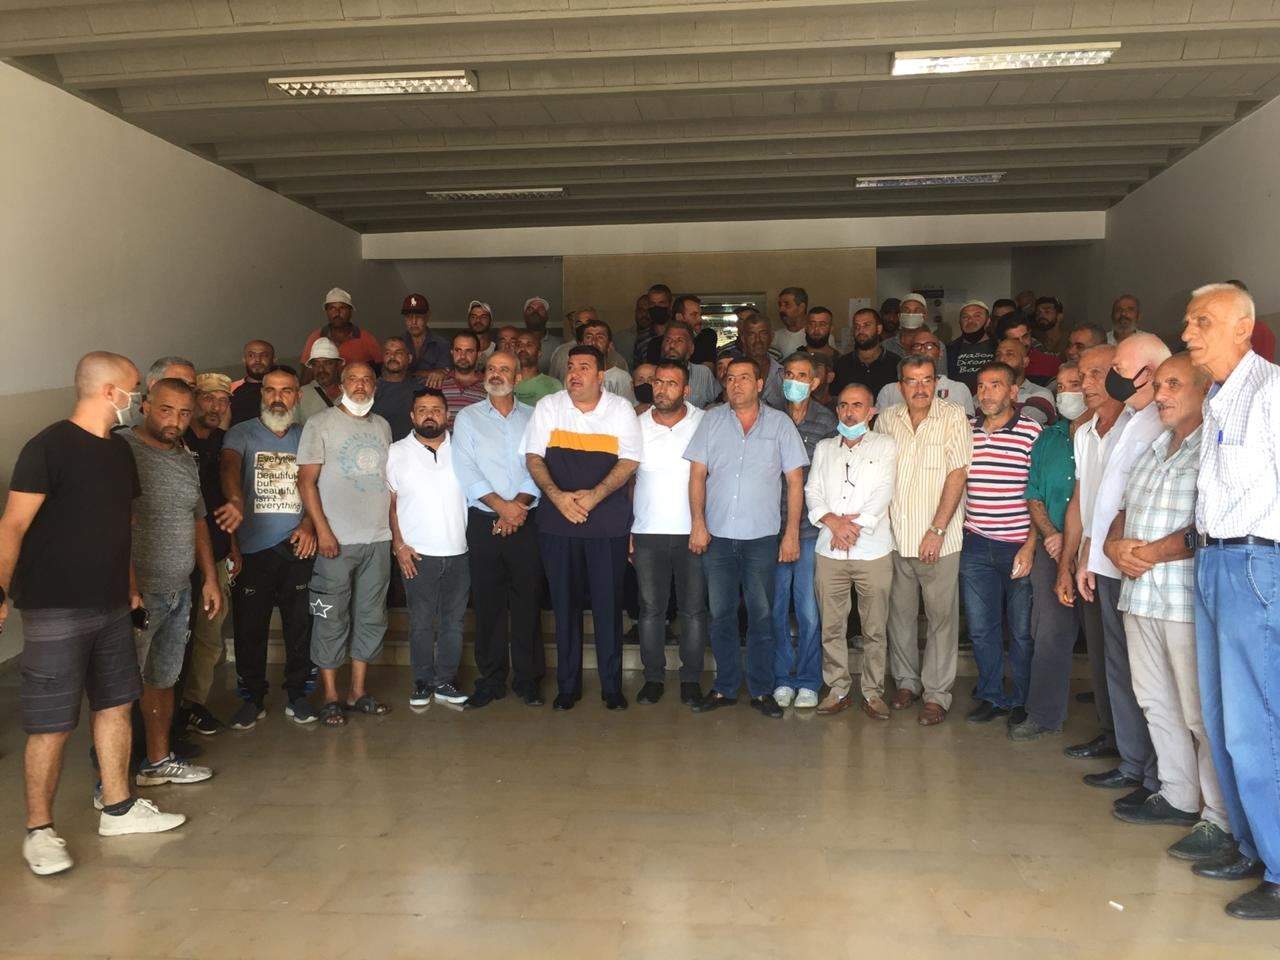 مراسل "الجديد" في طرابلس: وقفة احتجاجية  للعمال المياومين في بلدية المينا احتجاجاً على عدم دفع رواتبهم لأكثر من أربعة أشهر